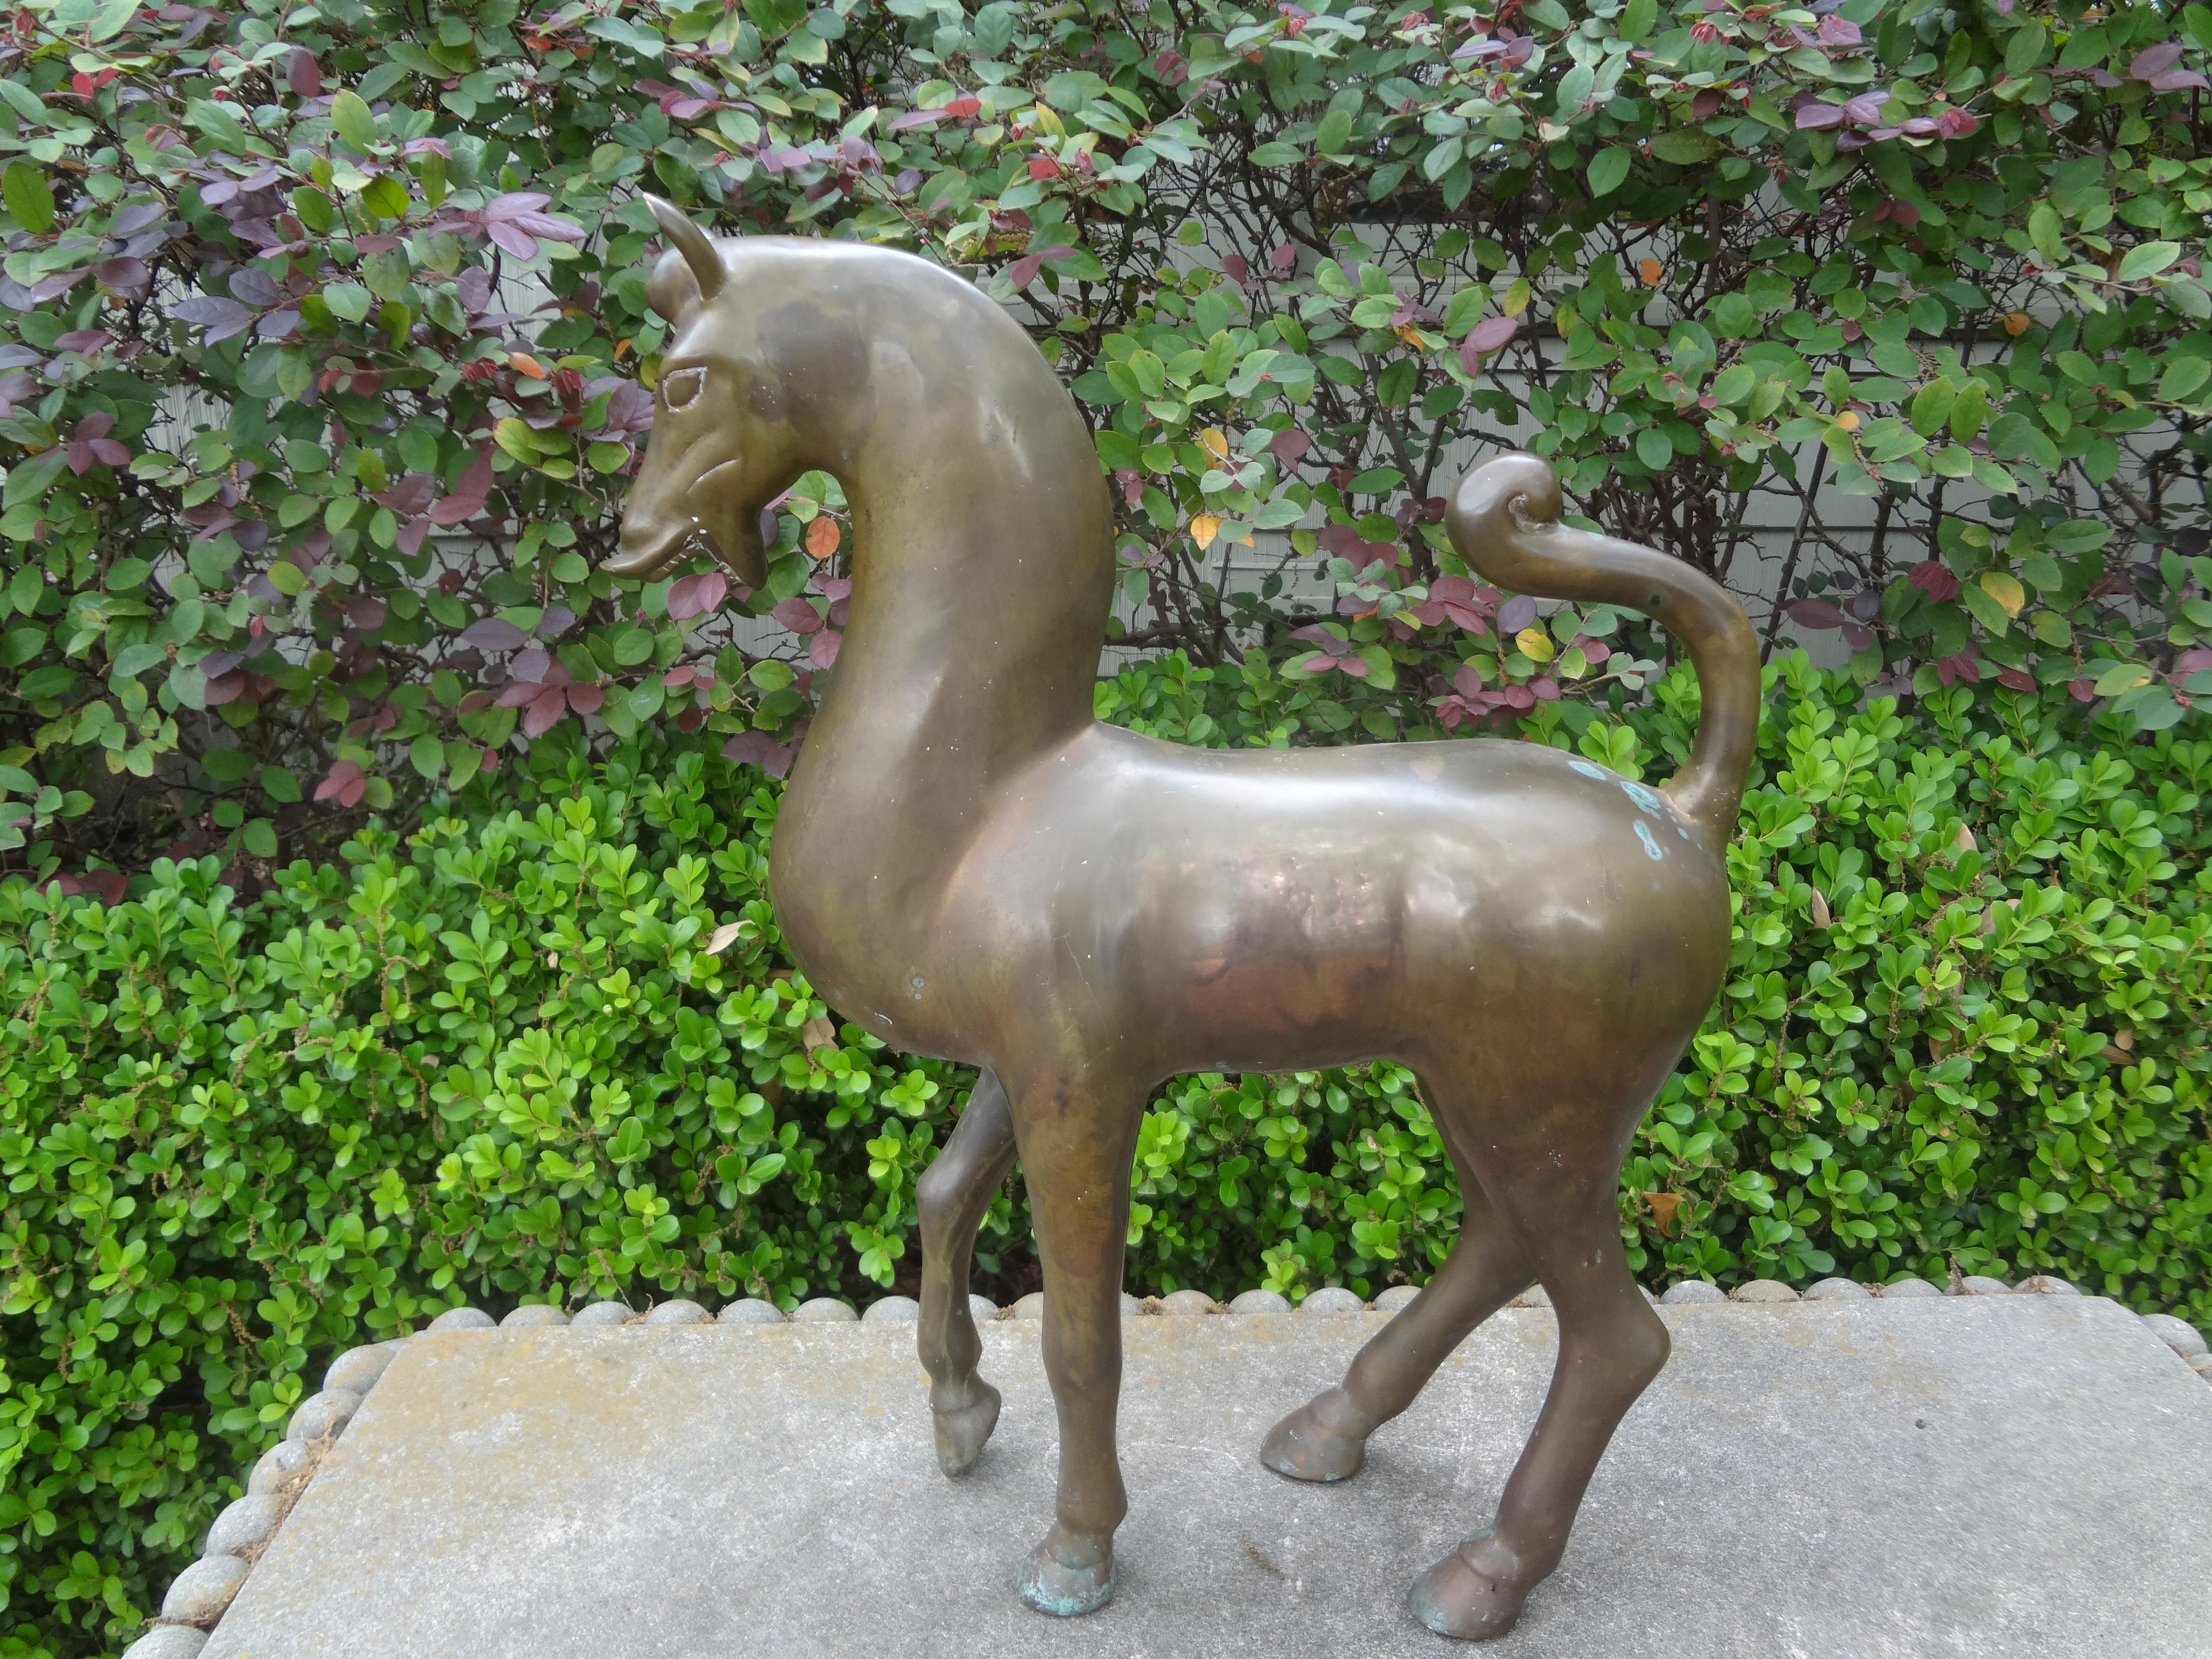 Große Hollywood Regency Messing Tang Pferd Skulptur.
Atemberaubende große Vintage Messing Tang Pferd Skulptur. Unsere Mid-Century Modern Pferdefigur oder -skulptur aus Messing steht in einer beherrschenden Position. 
Schöne Patina, kann aber auf